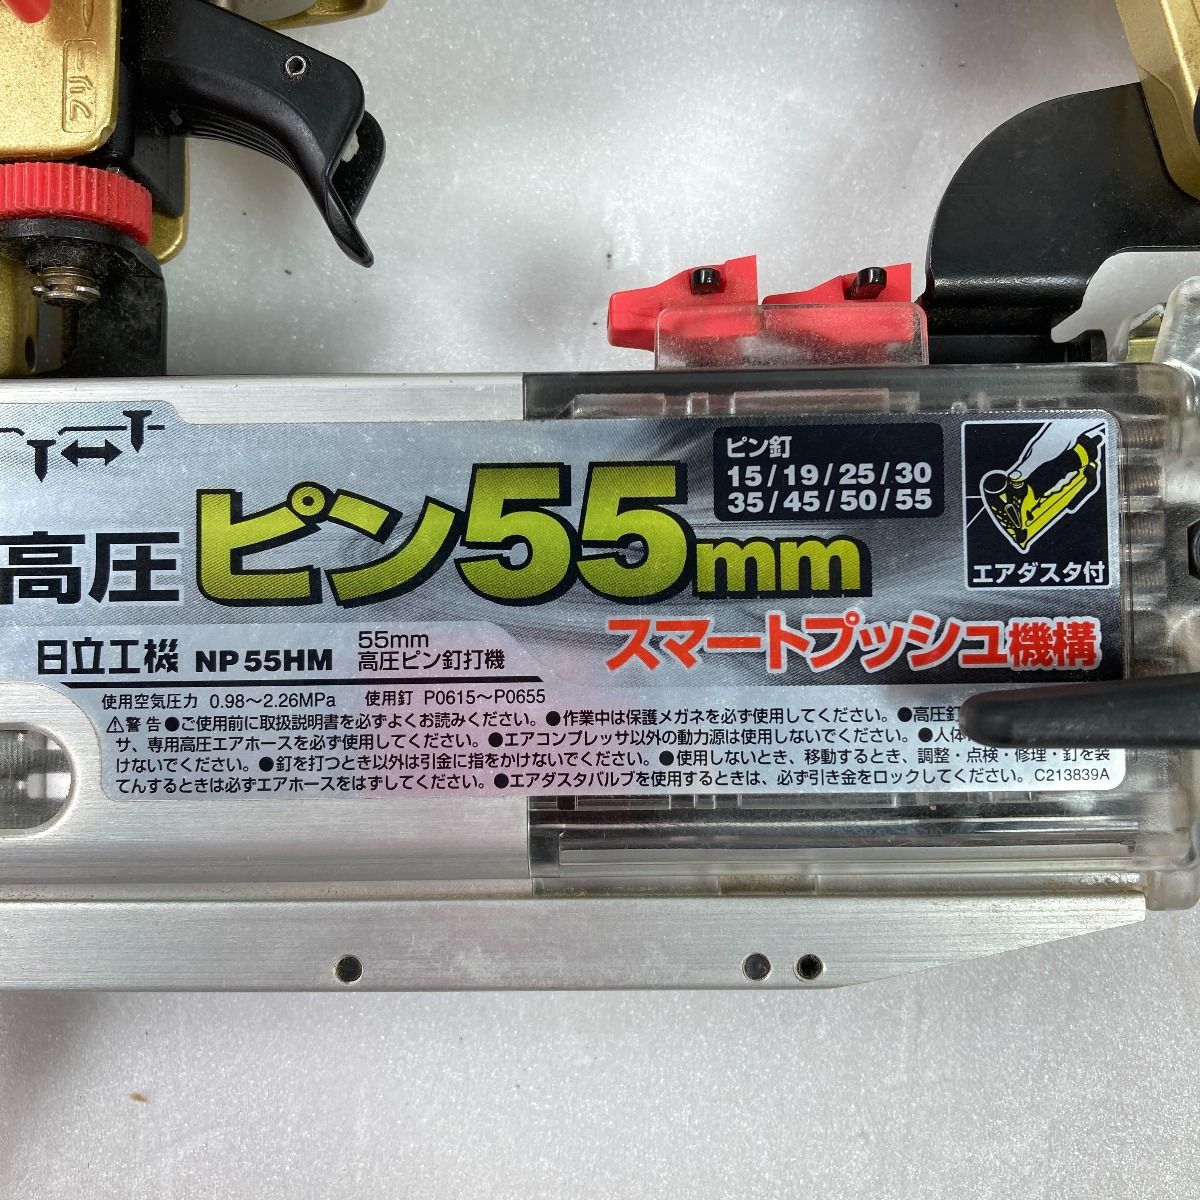 HITACHI 日立 55mm 高圧ピン釘打ち機 ケース付 NP55HM ブラック×ゴールド - メルカリ